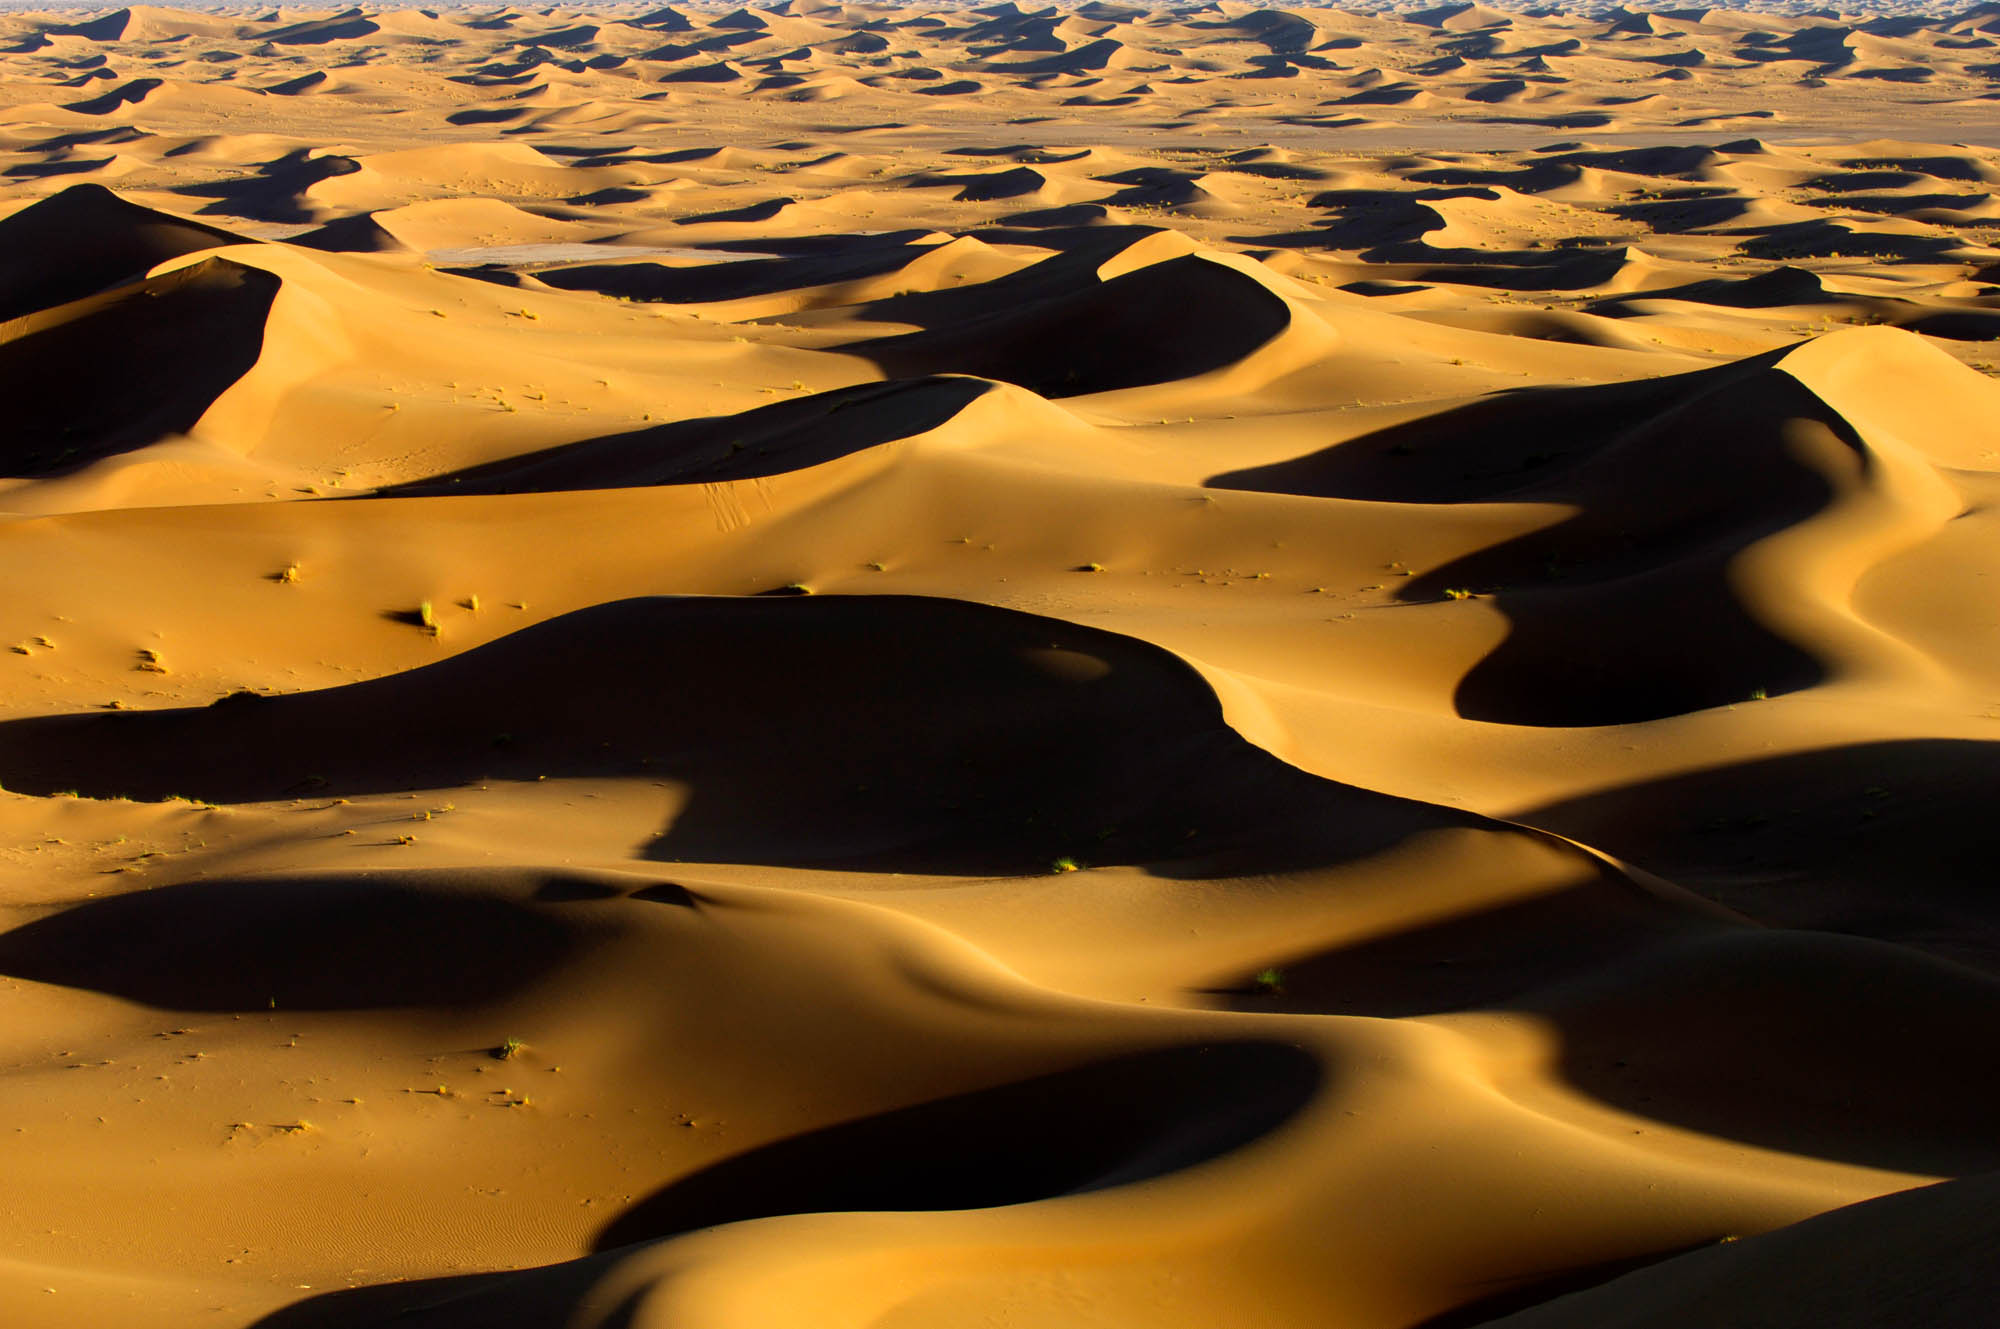 désert du Sahara lors d'un voyage photo au Maroc